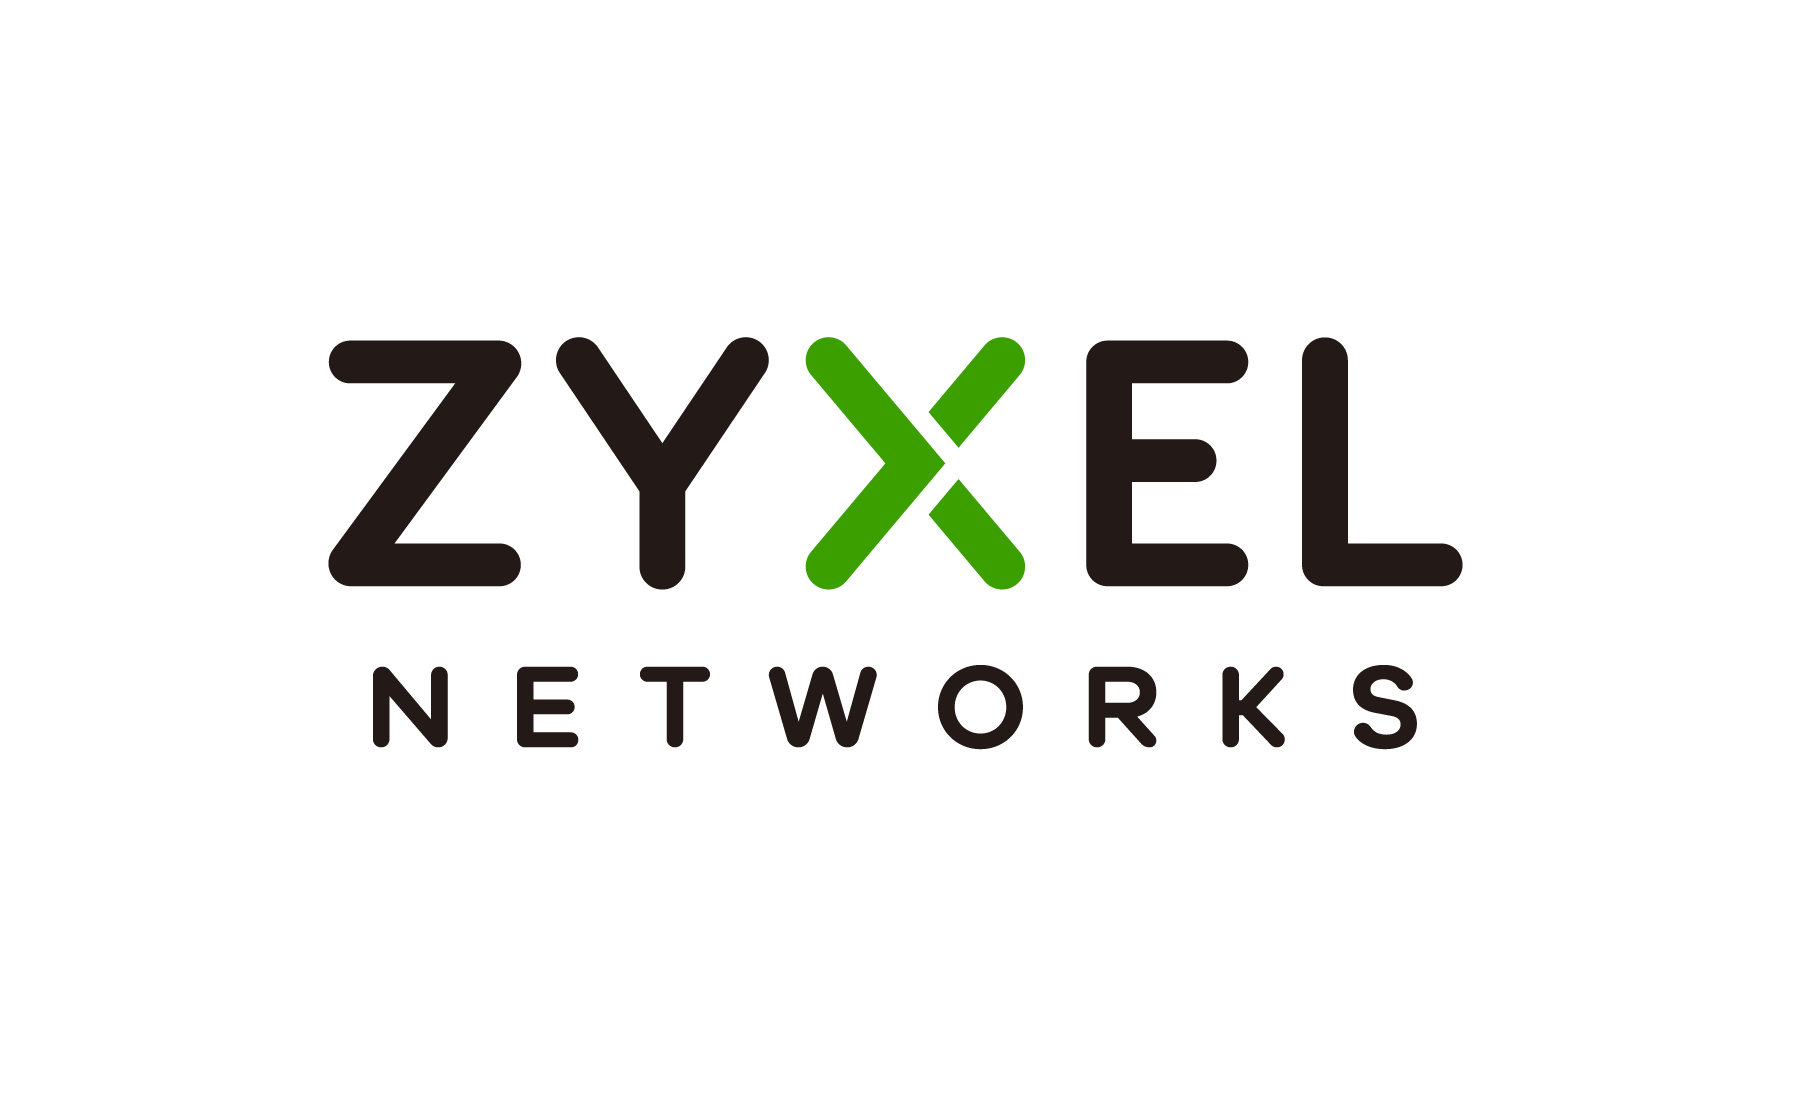 (c) Zyxel.com